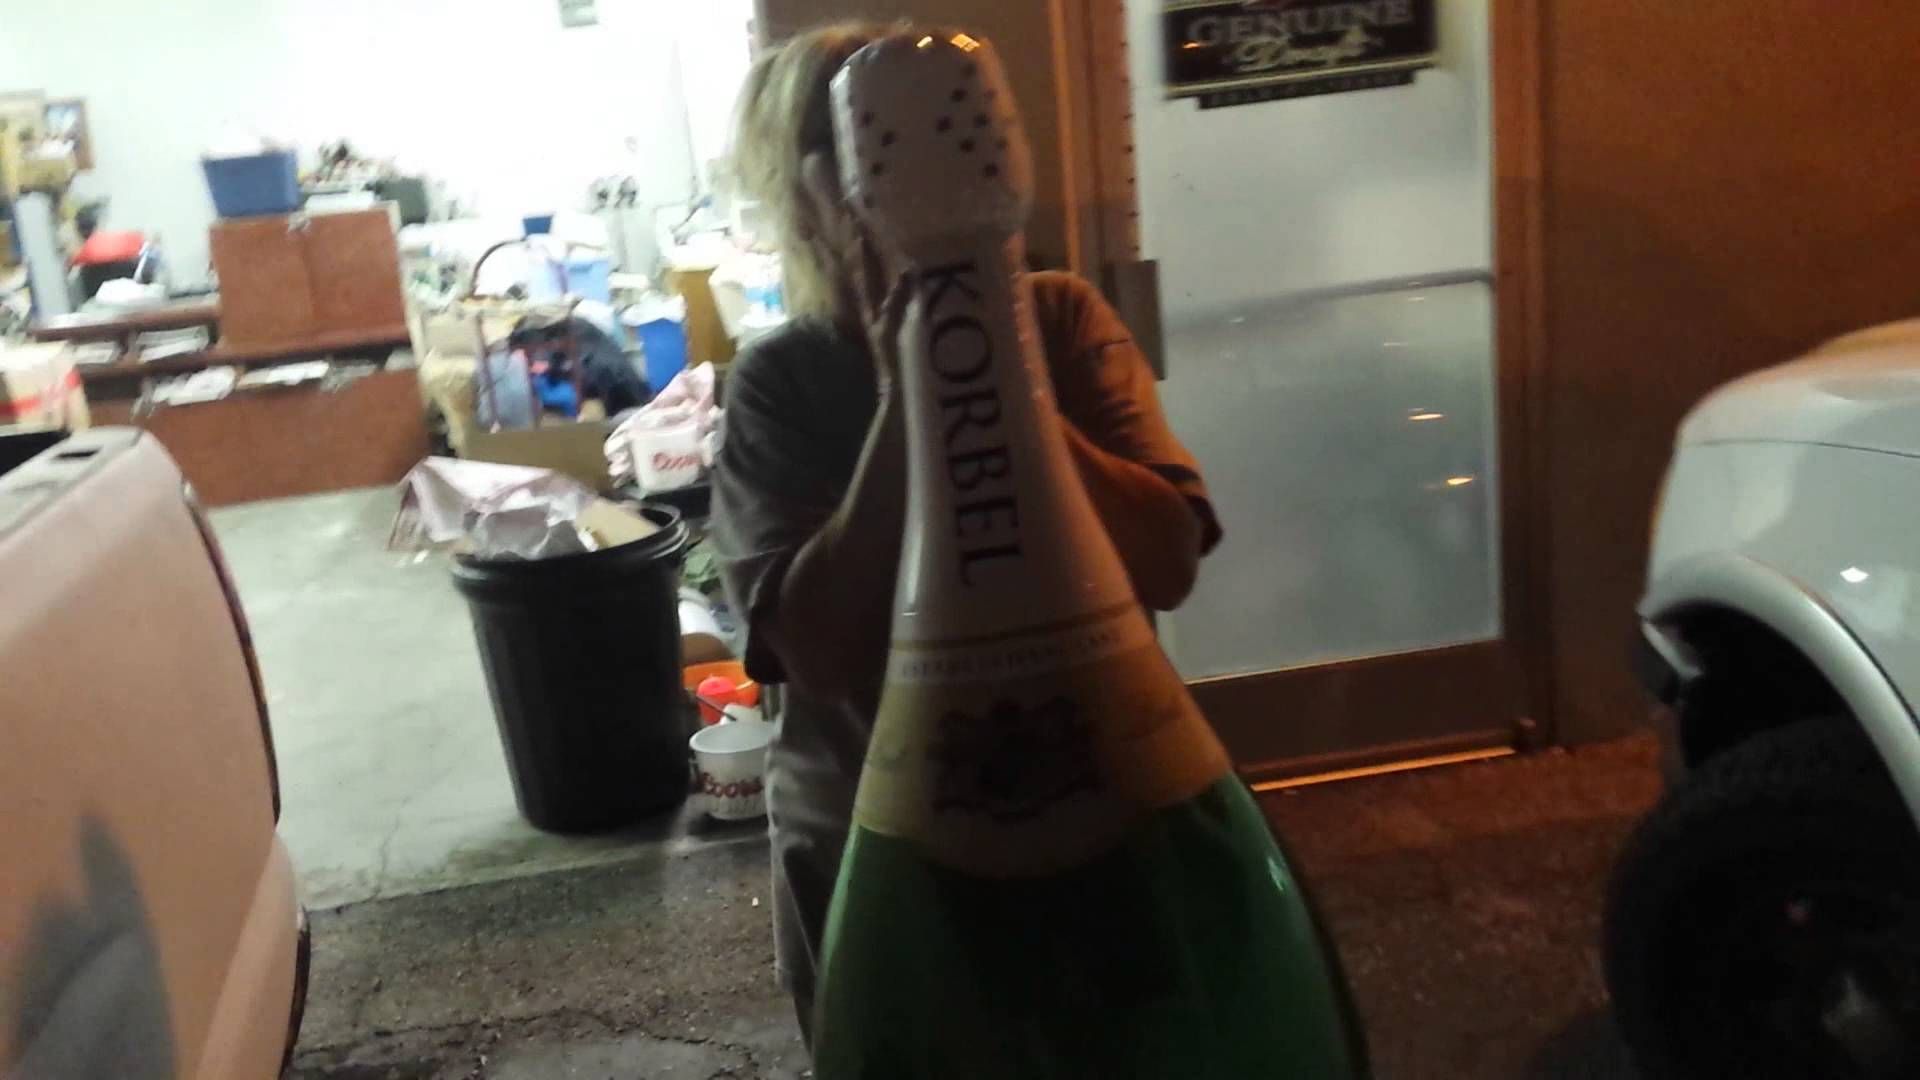 Giant Korbel Champagne Bottle Household Items